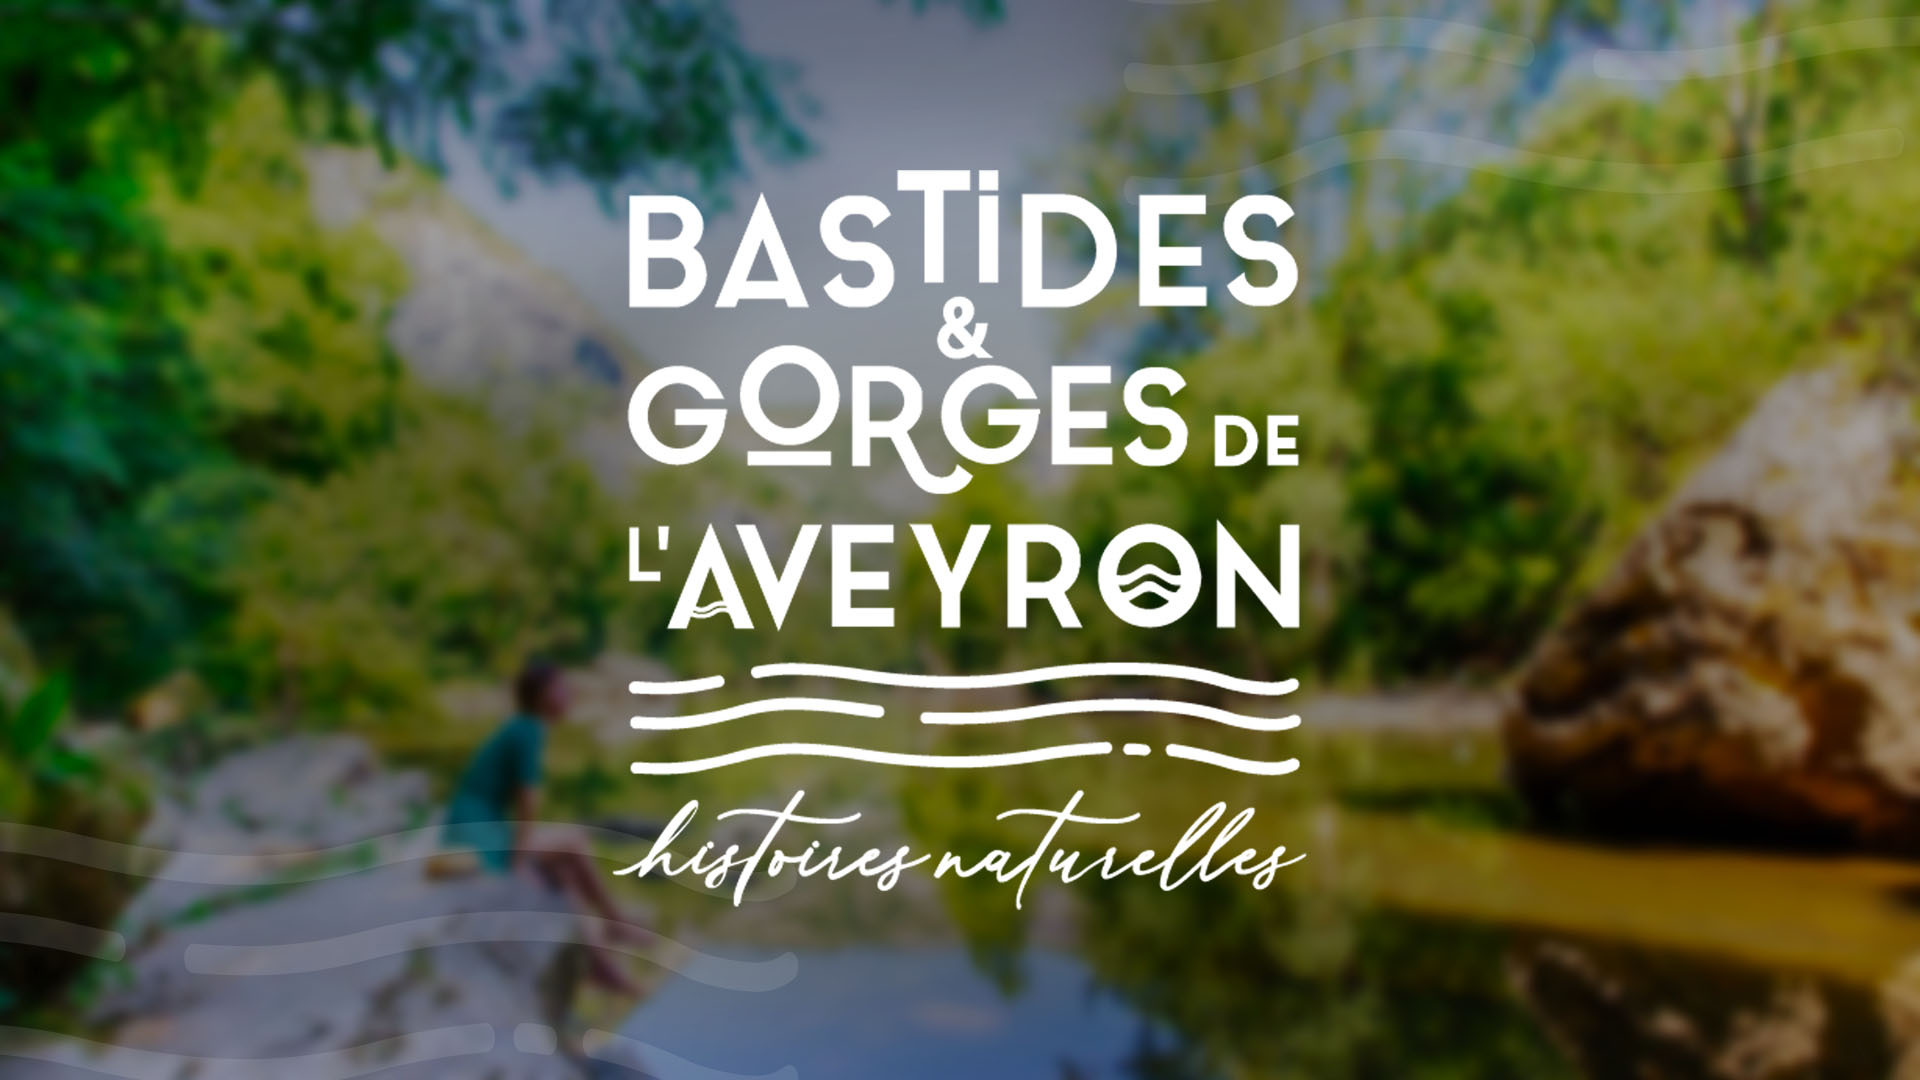 Bastides & Gorges de l’Aveyron